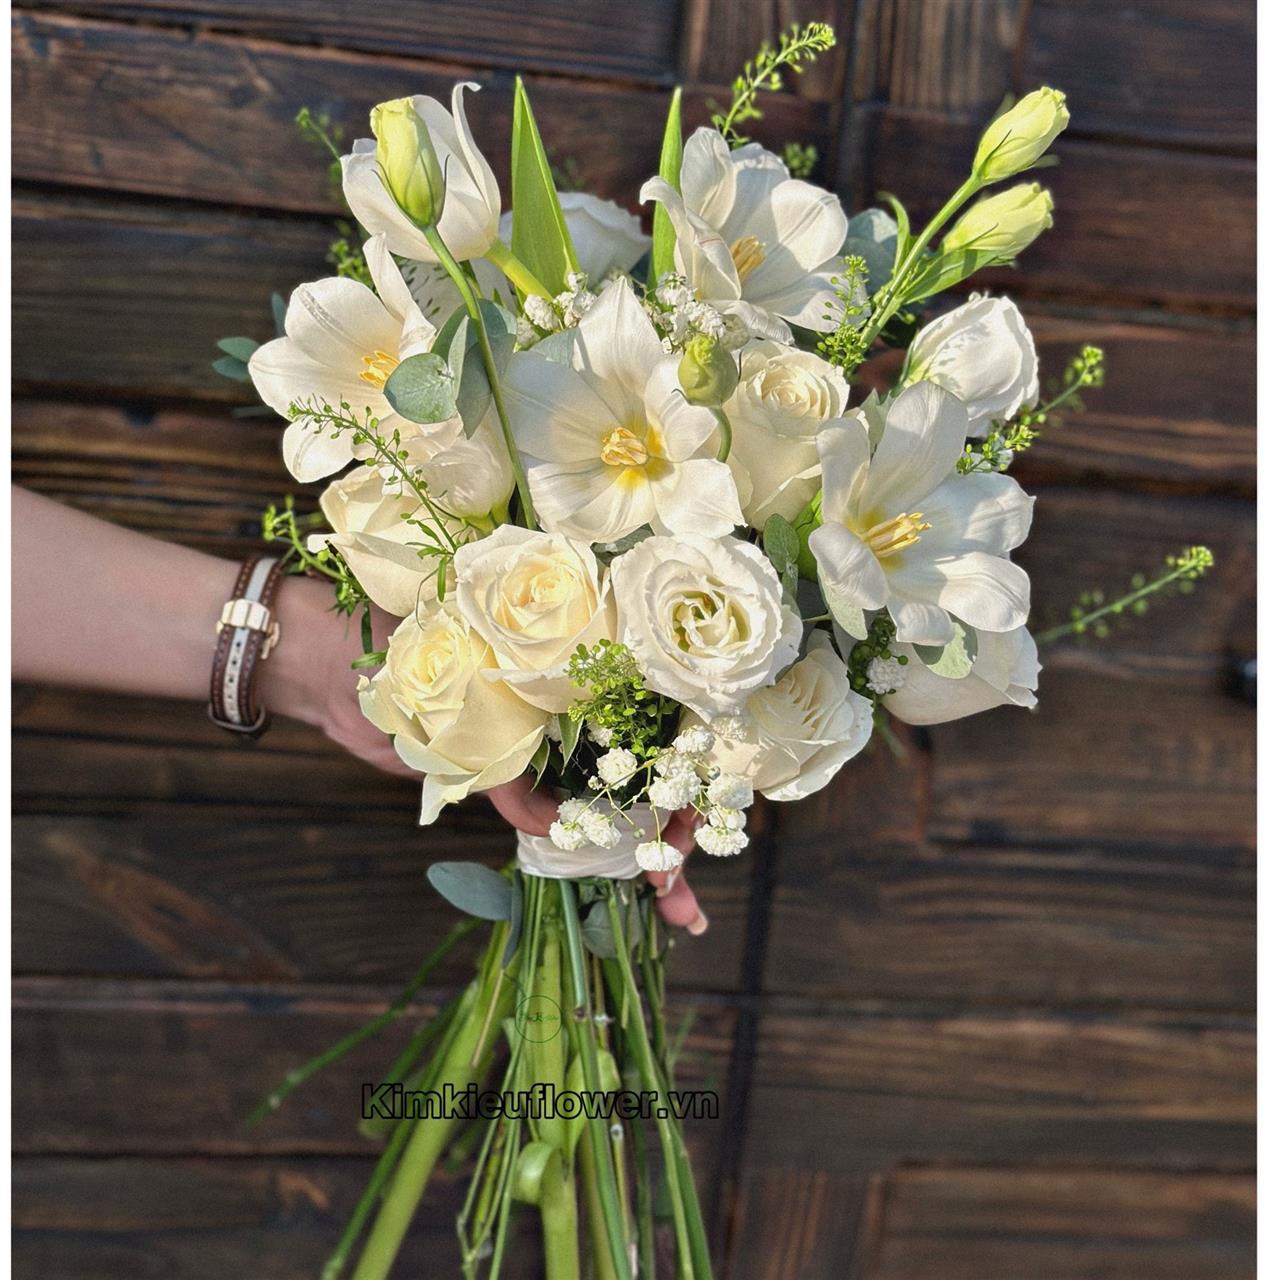 Bó hoa cưới tulip trắng - mang vẻ đẹp tinh khôi, biểu tượng cho tình yêu trong sáng và vĩnh cữu